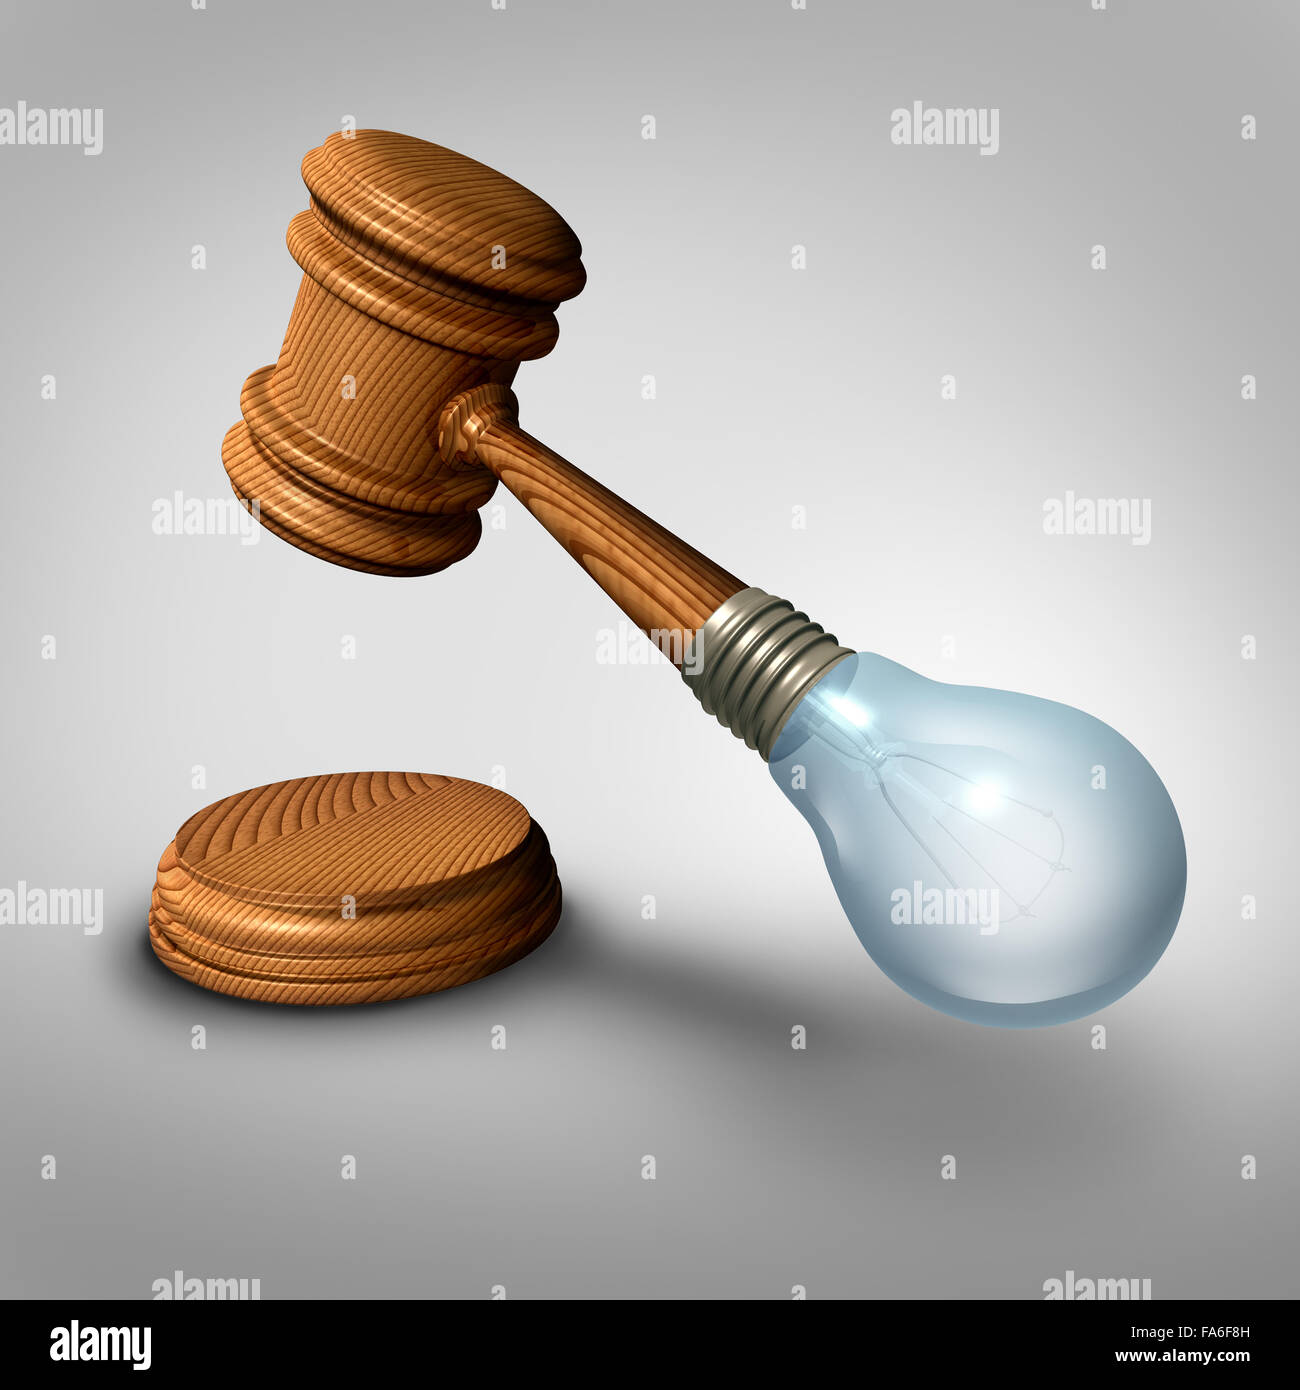 Les idées et le jugement droit concept symbole comme juge maillet ou marteau fait avec une ampoule comme une métaphore d'une nouvelle législation ou avis juridiques et avocat des idées. Banque D'Images